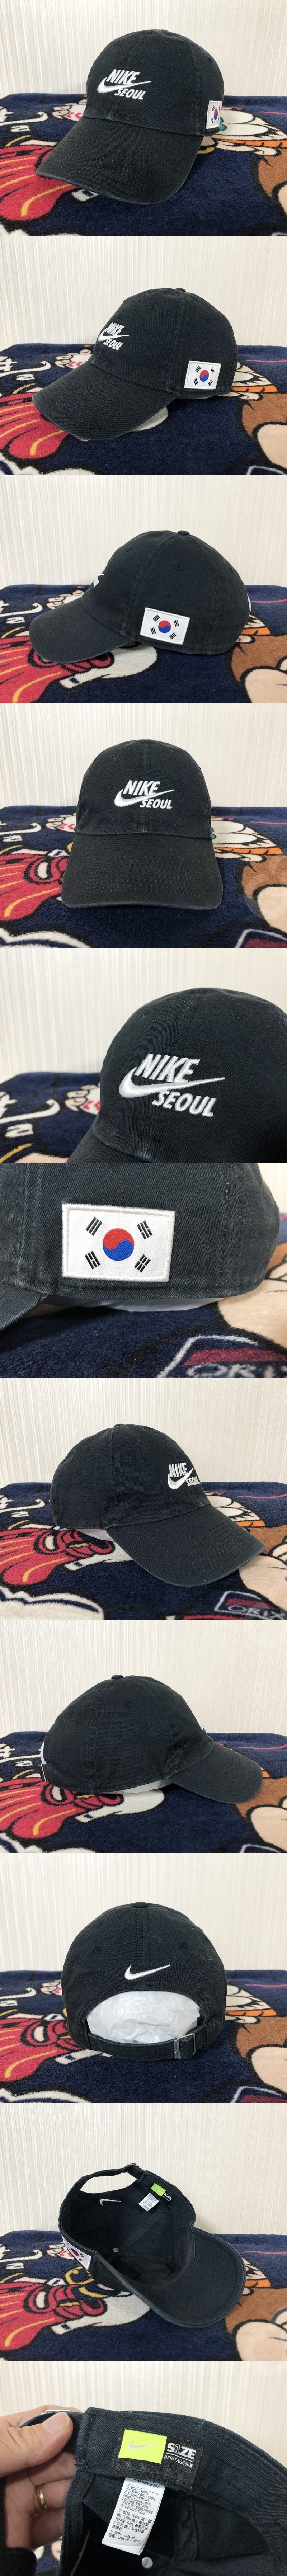 나이키서울(SEOUL) 한정 블랙볼캡/모자/태극기패치